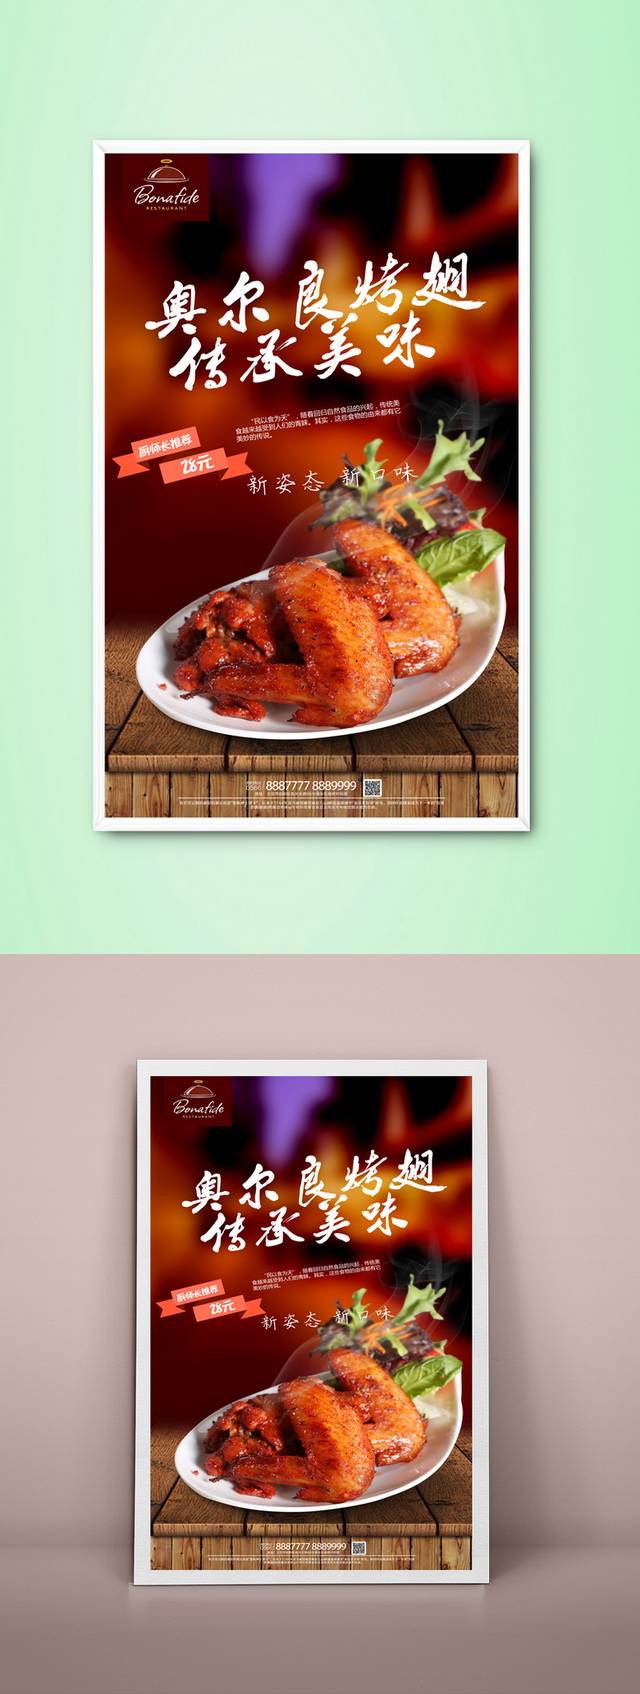 经典美食奥尔良鸡翅宣传海报设计